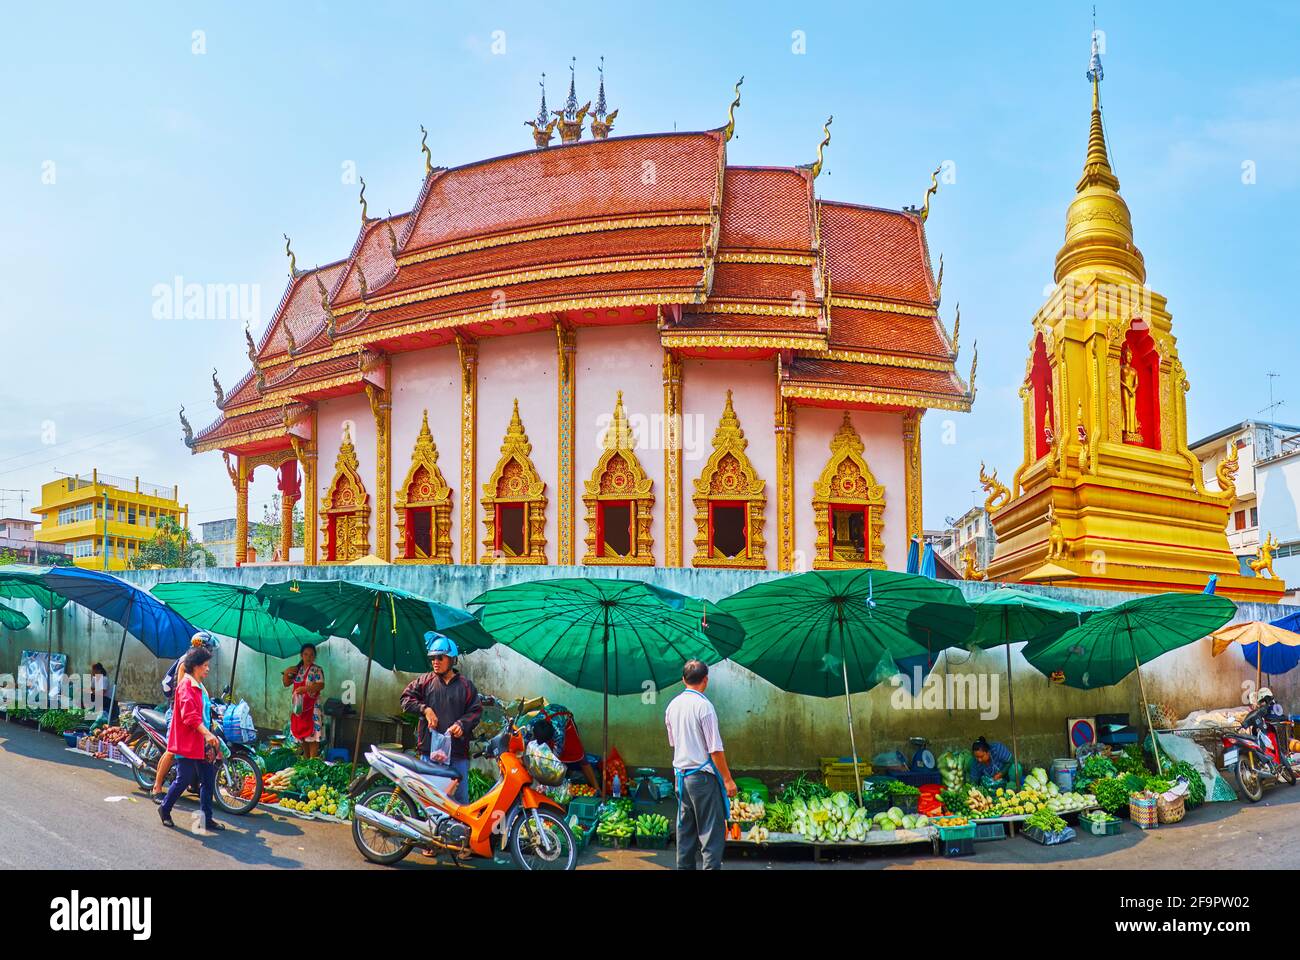 CHIANG RAI, THAÏLANDE - 11 MAI 2019 : Panorama du temple de Wat Mung Muang avec le pittoresque doré Chedi et la salle principale, décorée avec un toit de pignon, carvin Banque D'Images